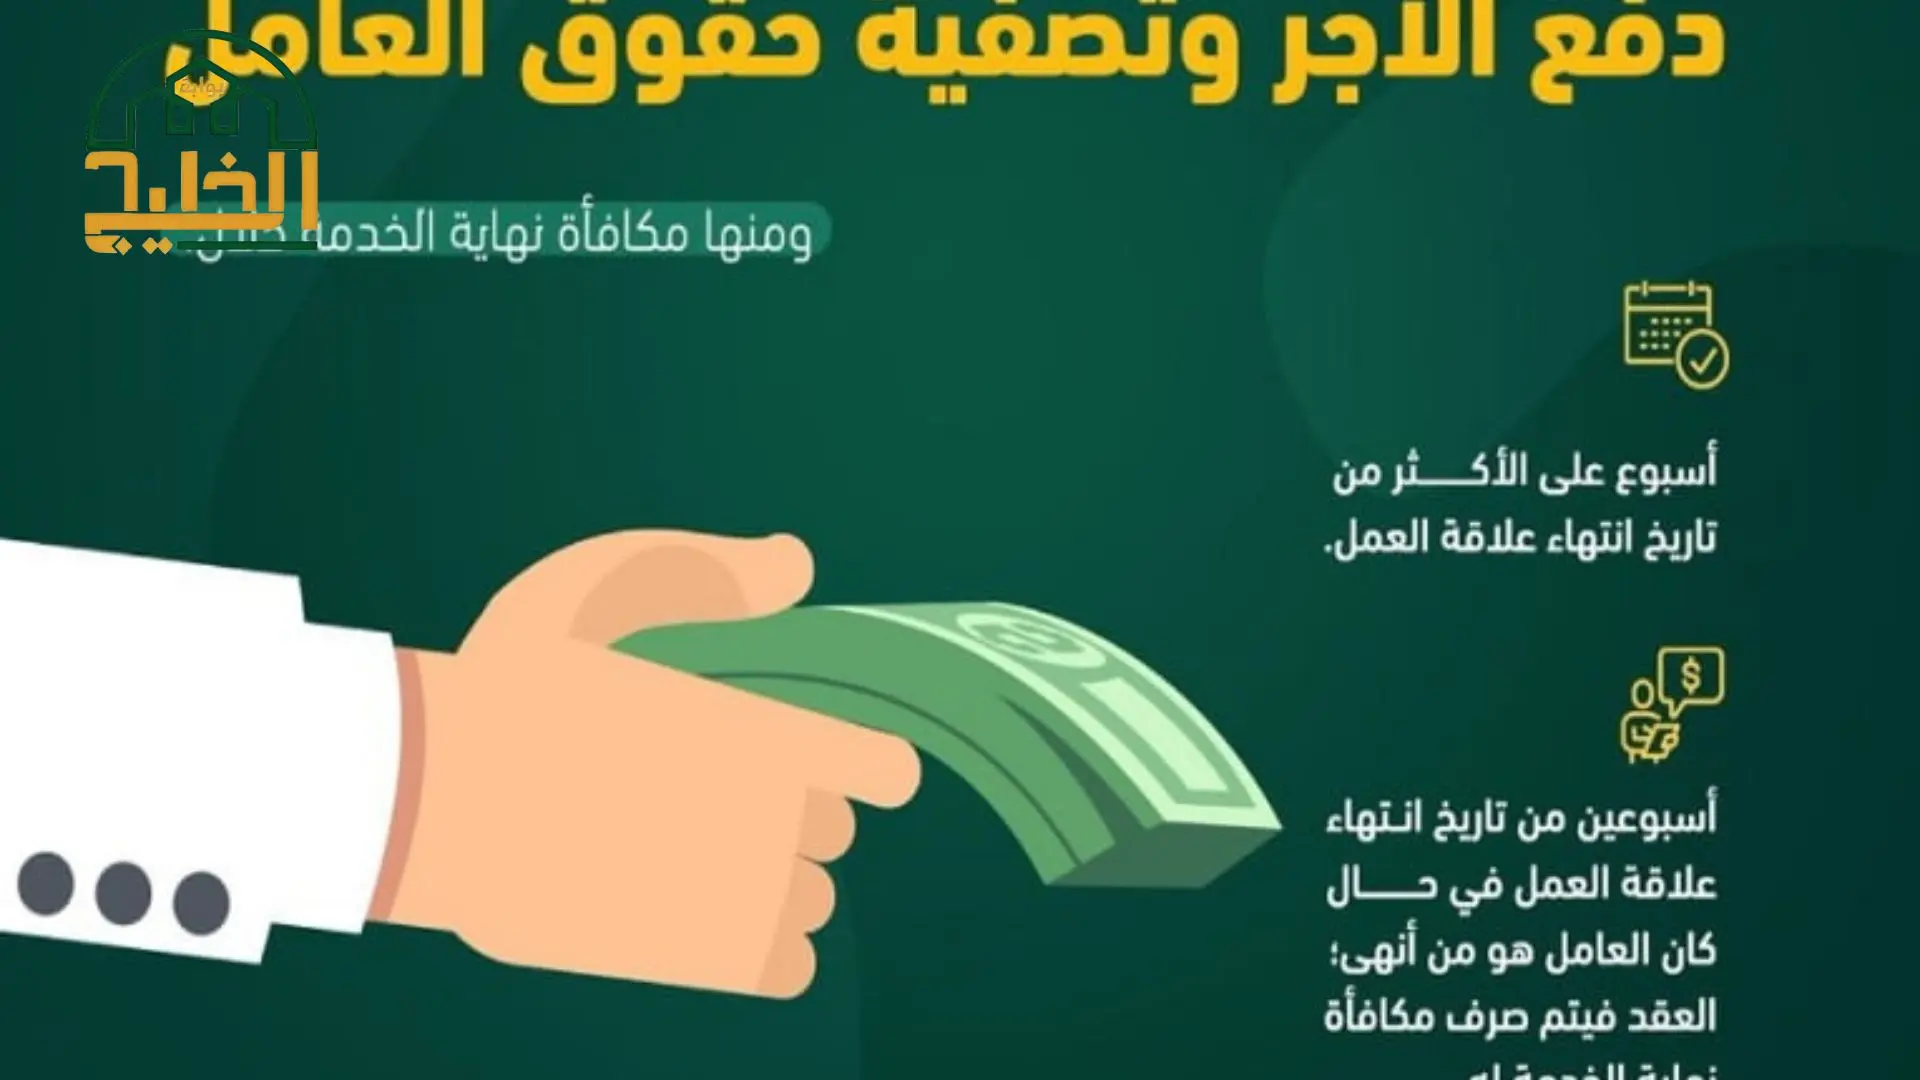 طريقة حساب مستحقات نهاية الخدمة حسب قانون العمل السعودي